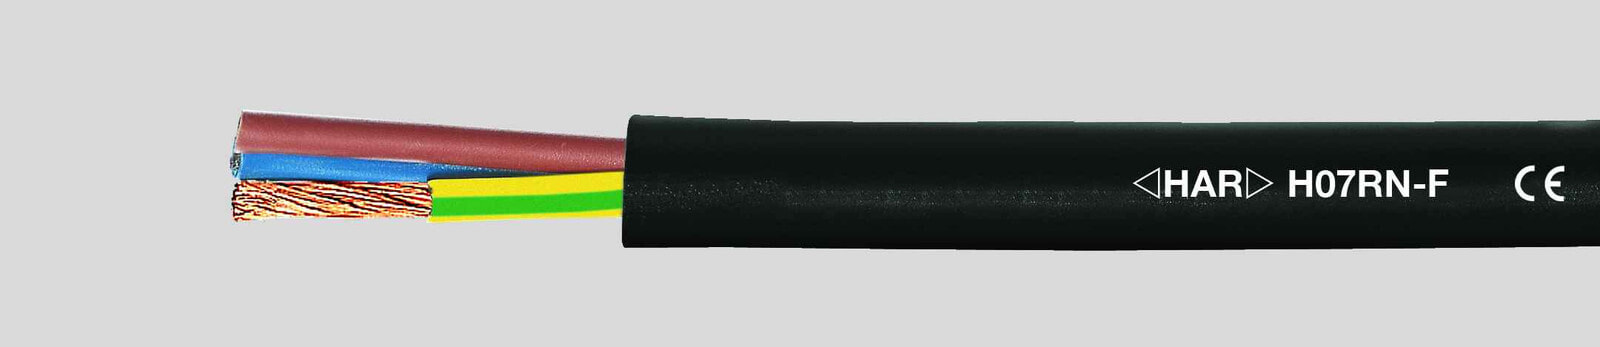 Helukabel 37047 - Low voltage cable - Black - Cooper - 4 mm² - 154 kg/km - -25 - 60 °C